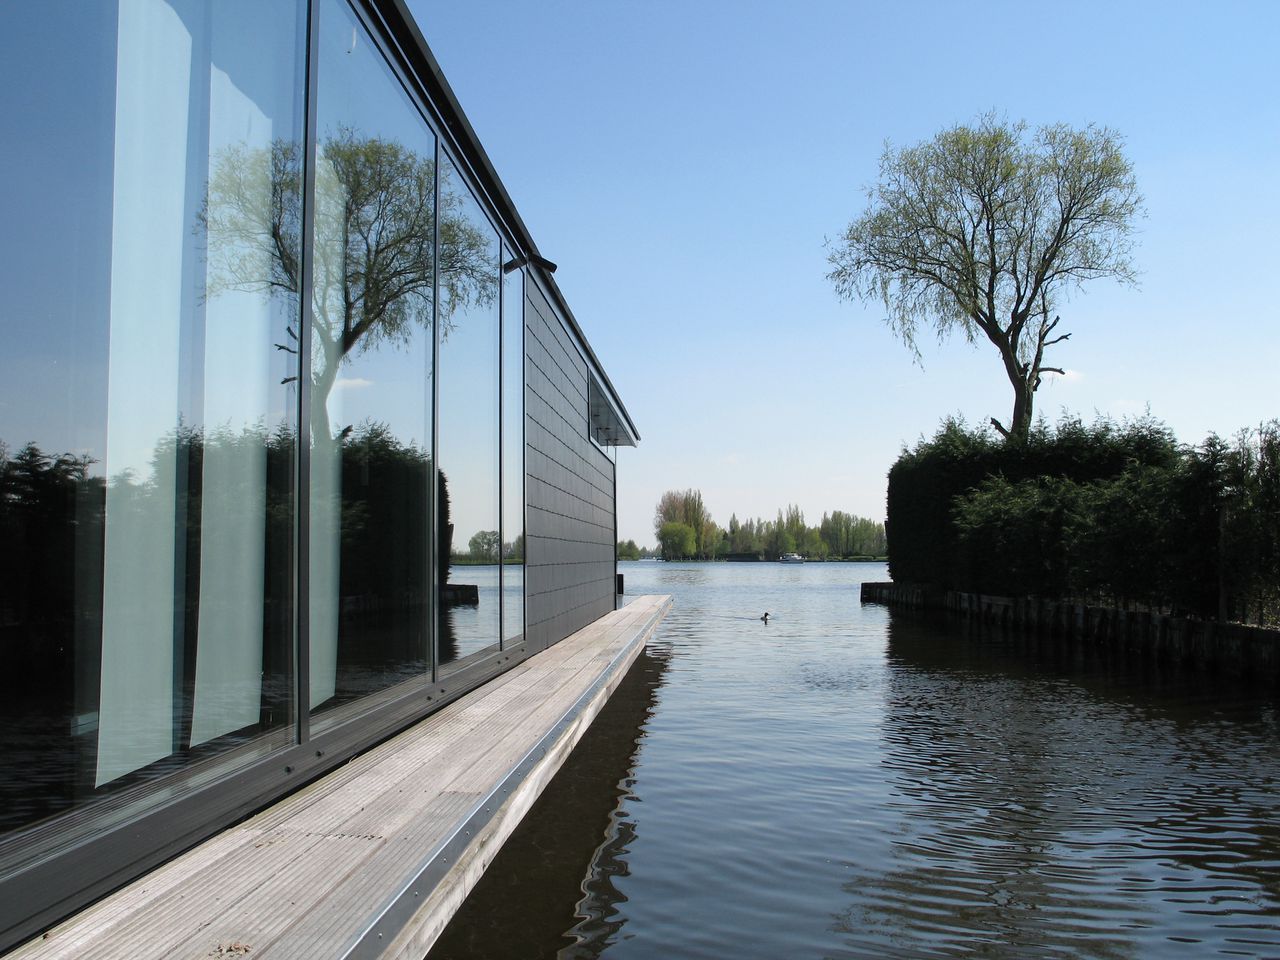 Voor de drijvende woningen van architect Koen Olthuis is in het buitenland meer belangstelling dan in Nederland. Foto Waterstudio